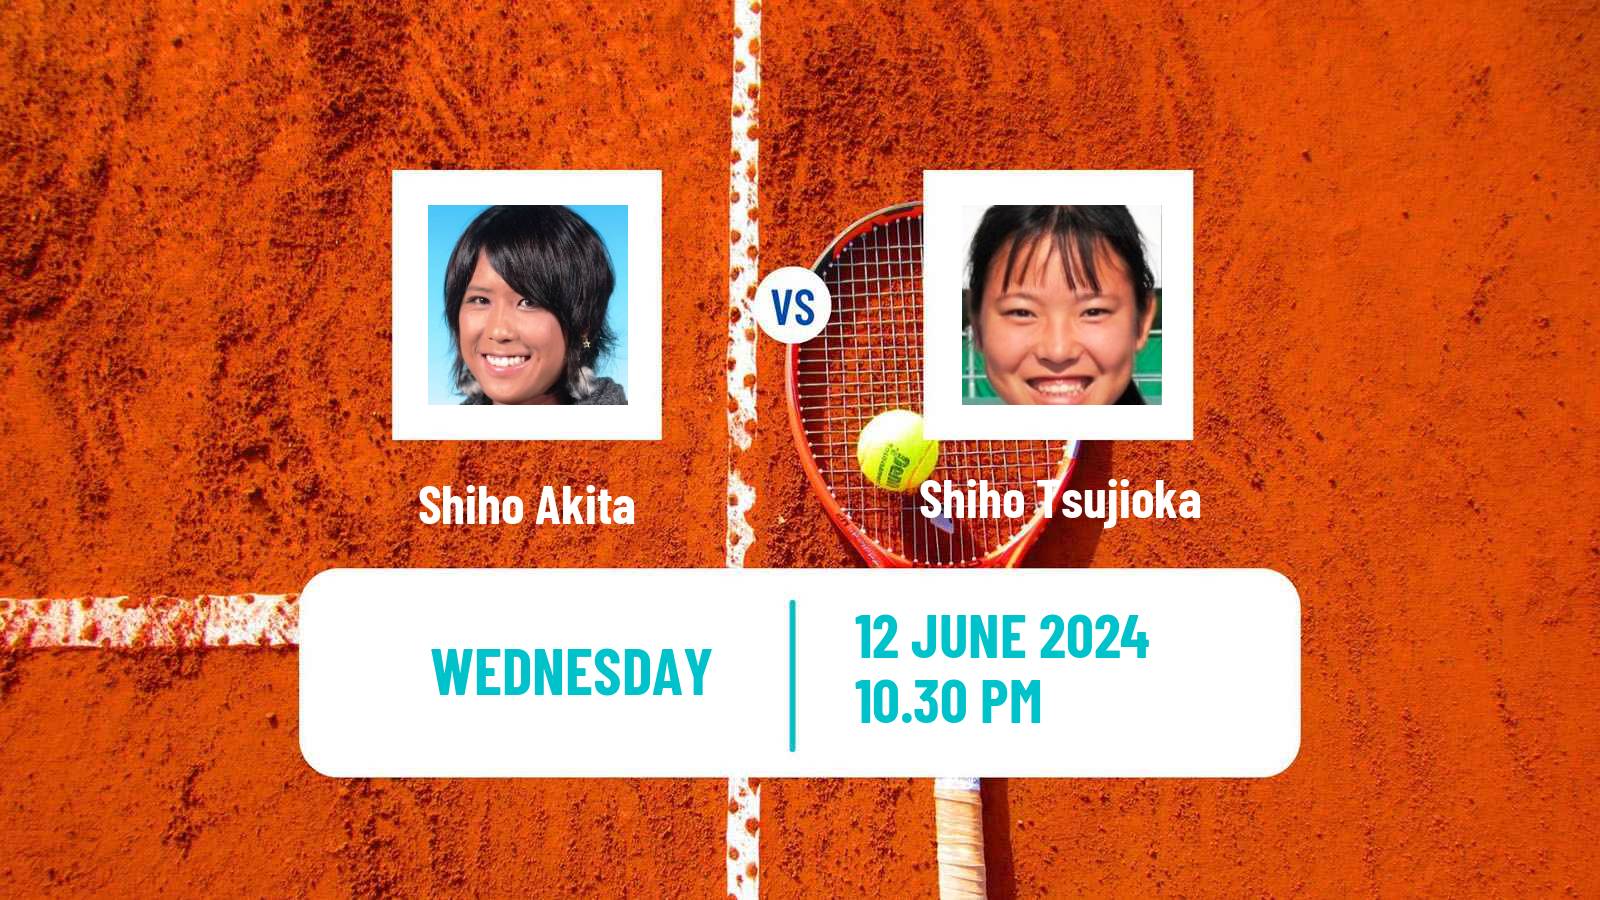 Tennis ITF W15 Tokyo 2 Women Shiho Akita - Shiho Tsujioka